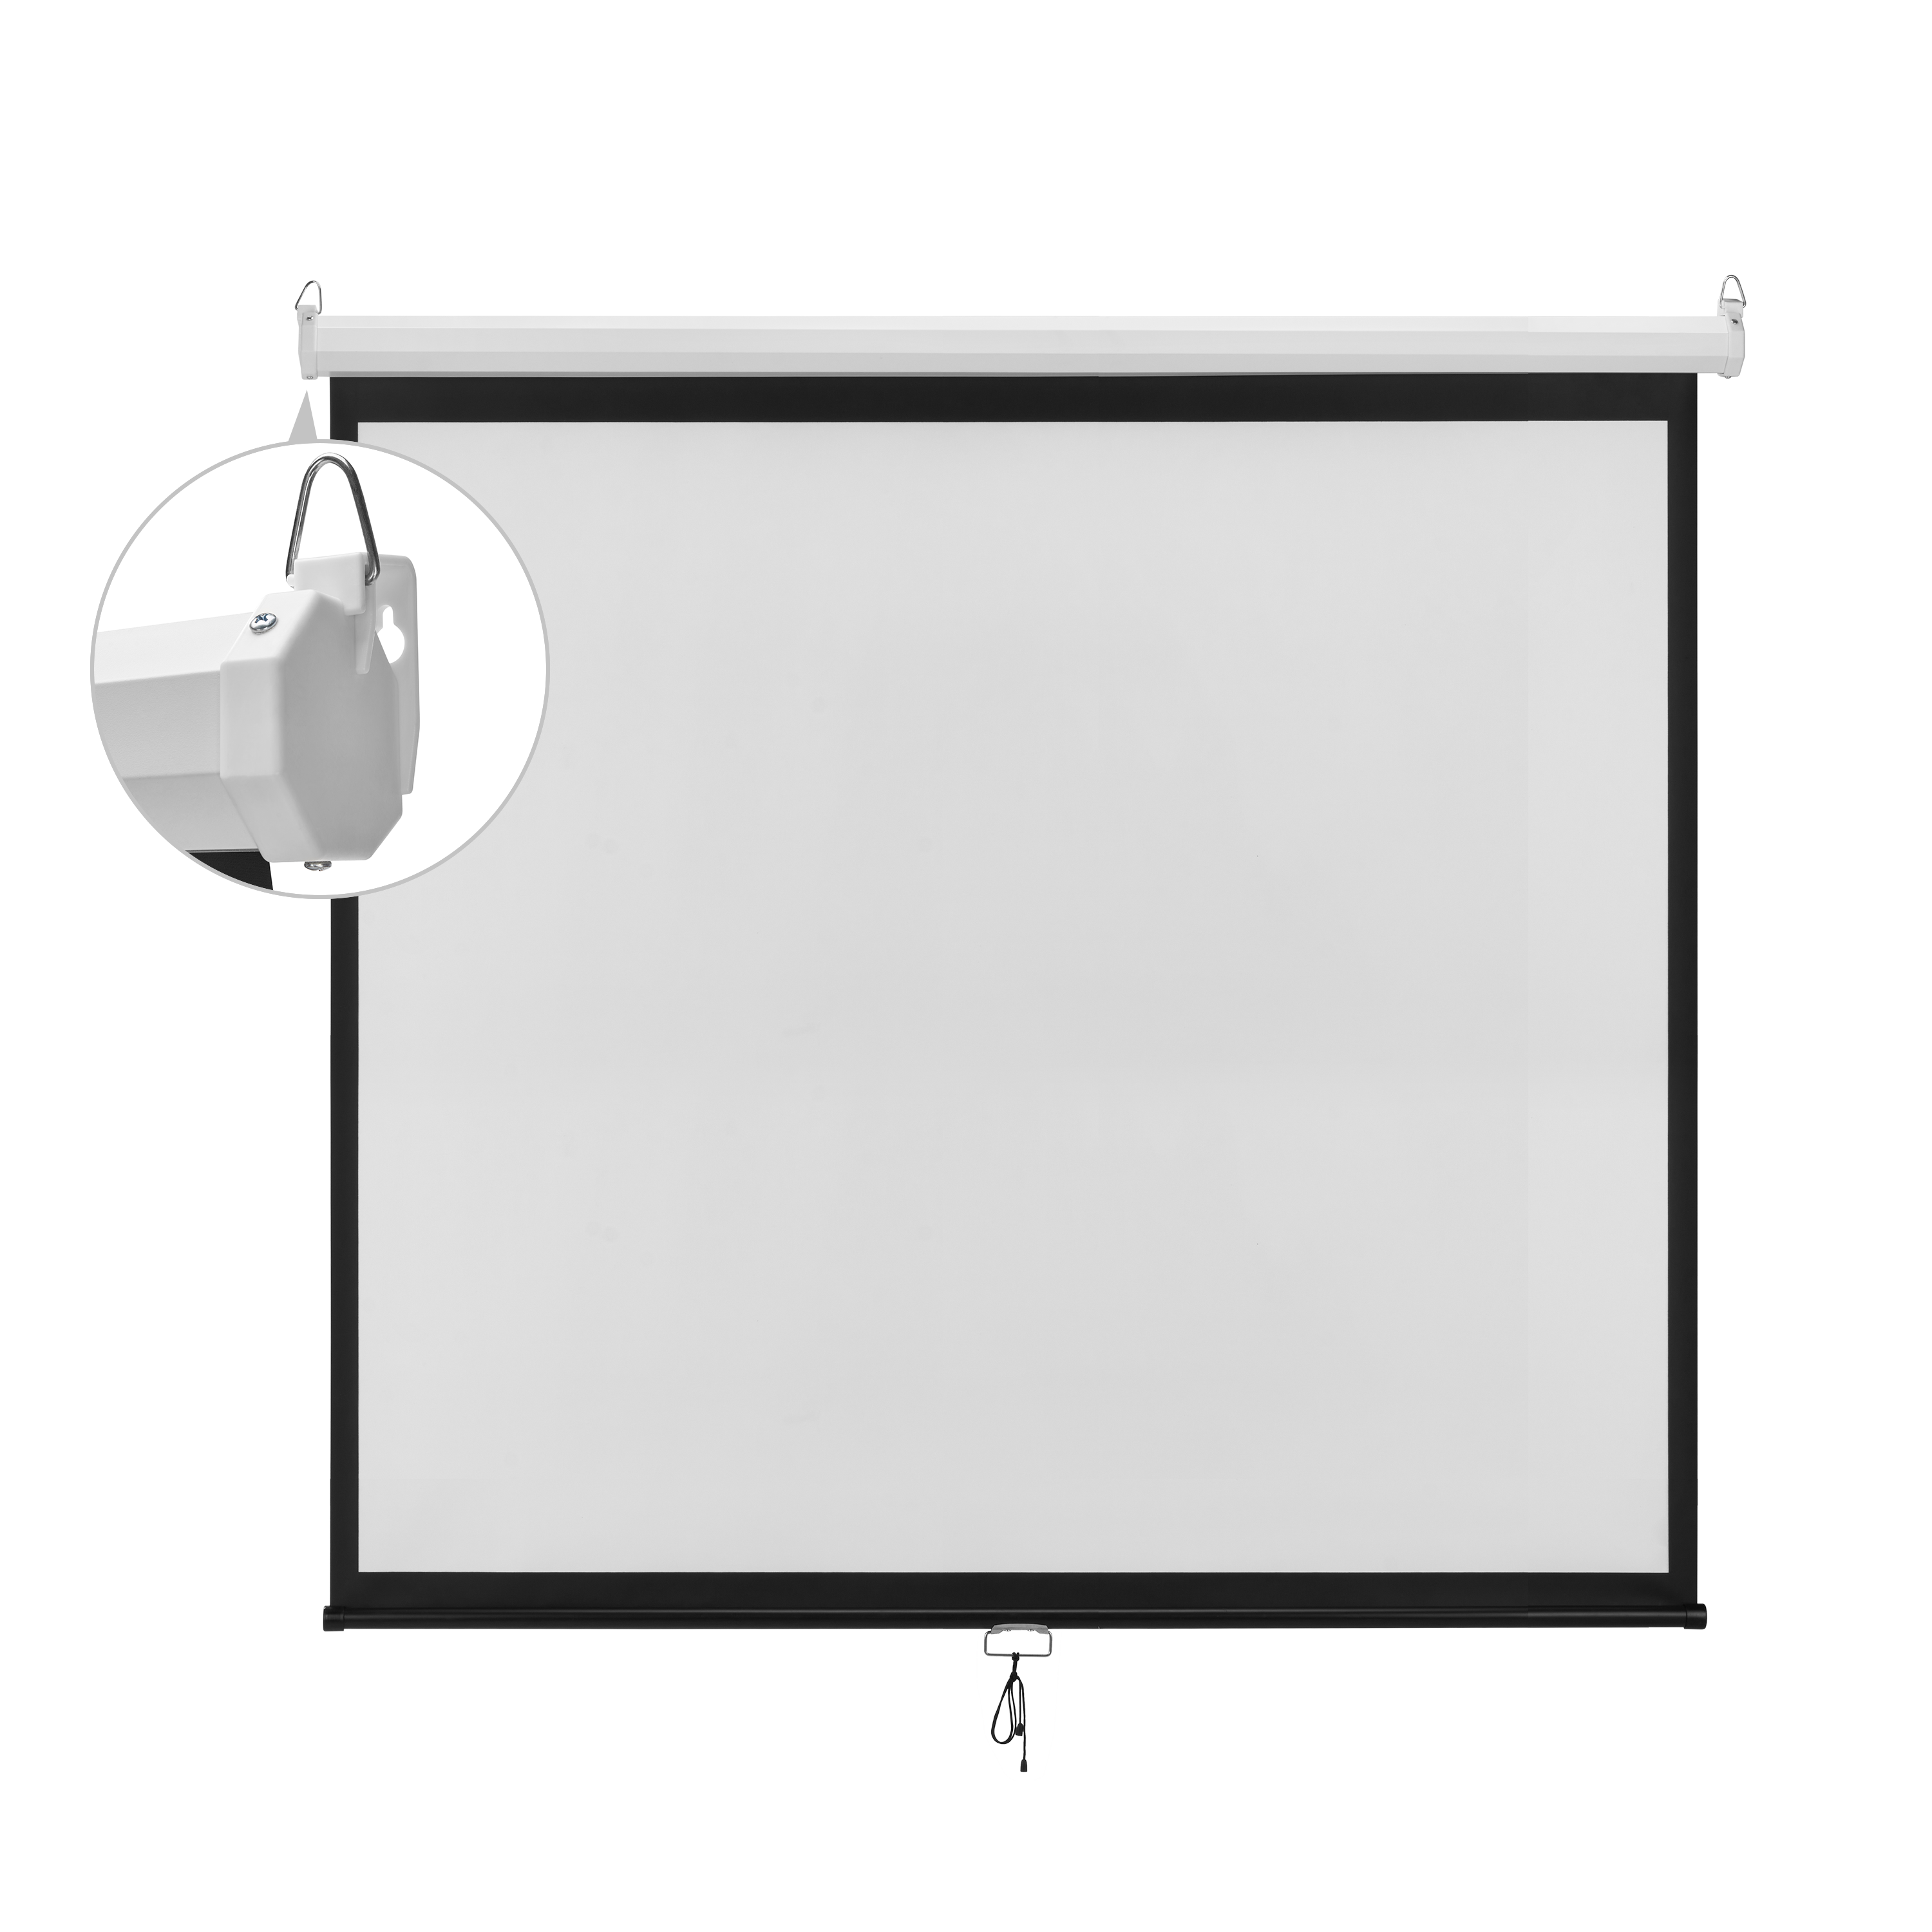 Projector Screens, Manual and Auto Projectors 